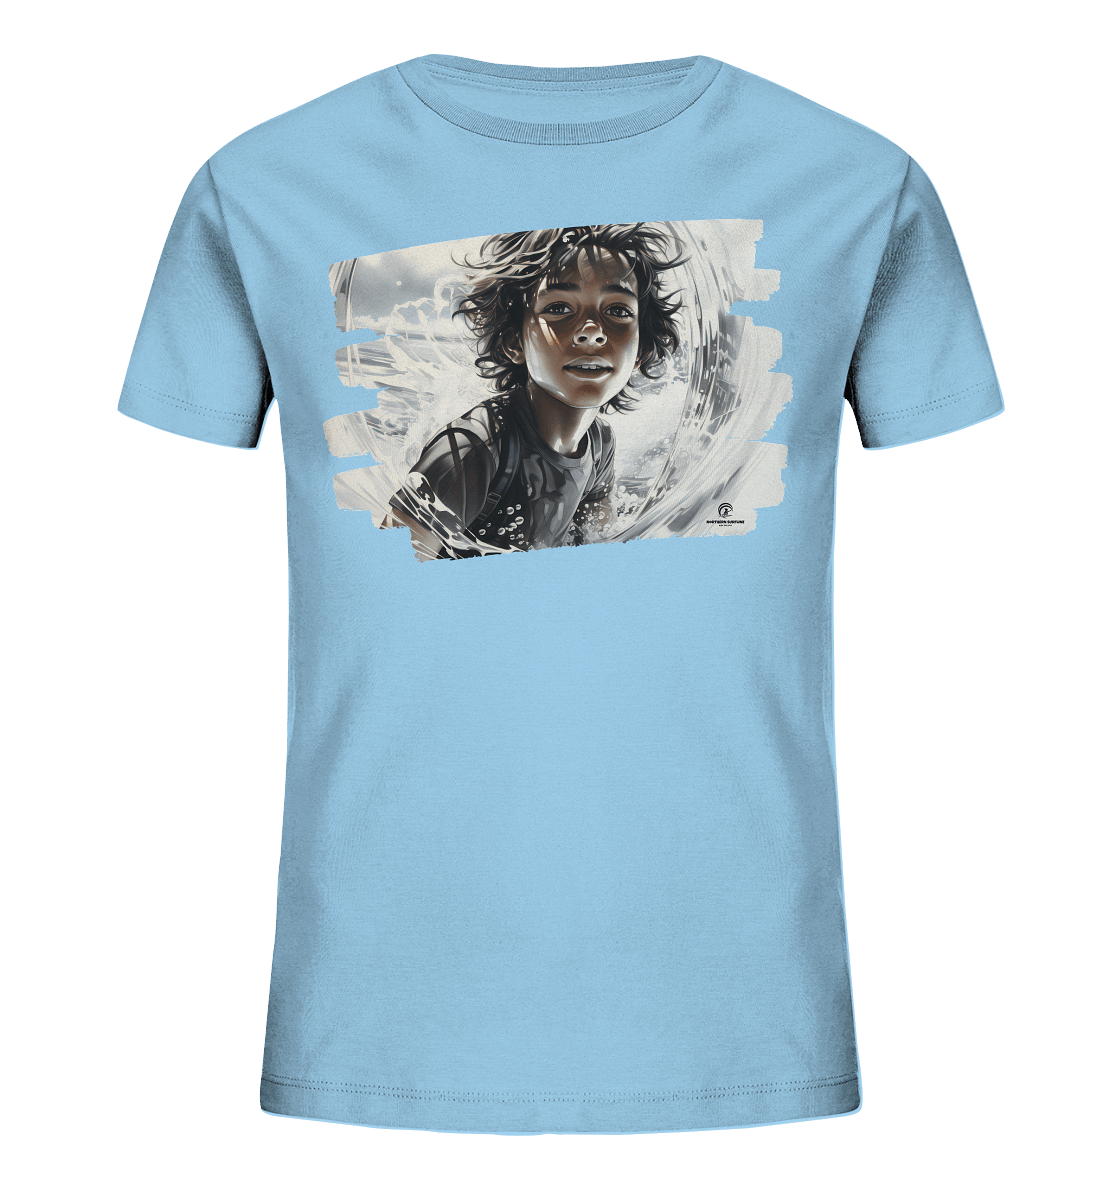 Northern Surfline - Kids Organic Shirt - Snapshirts